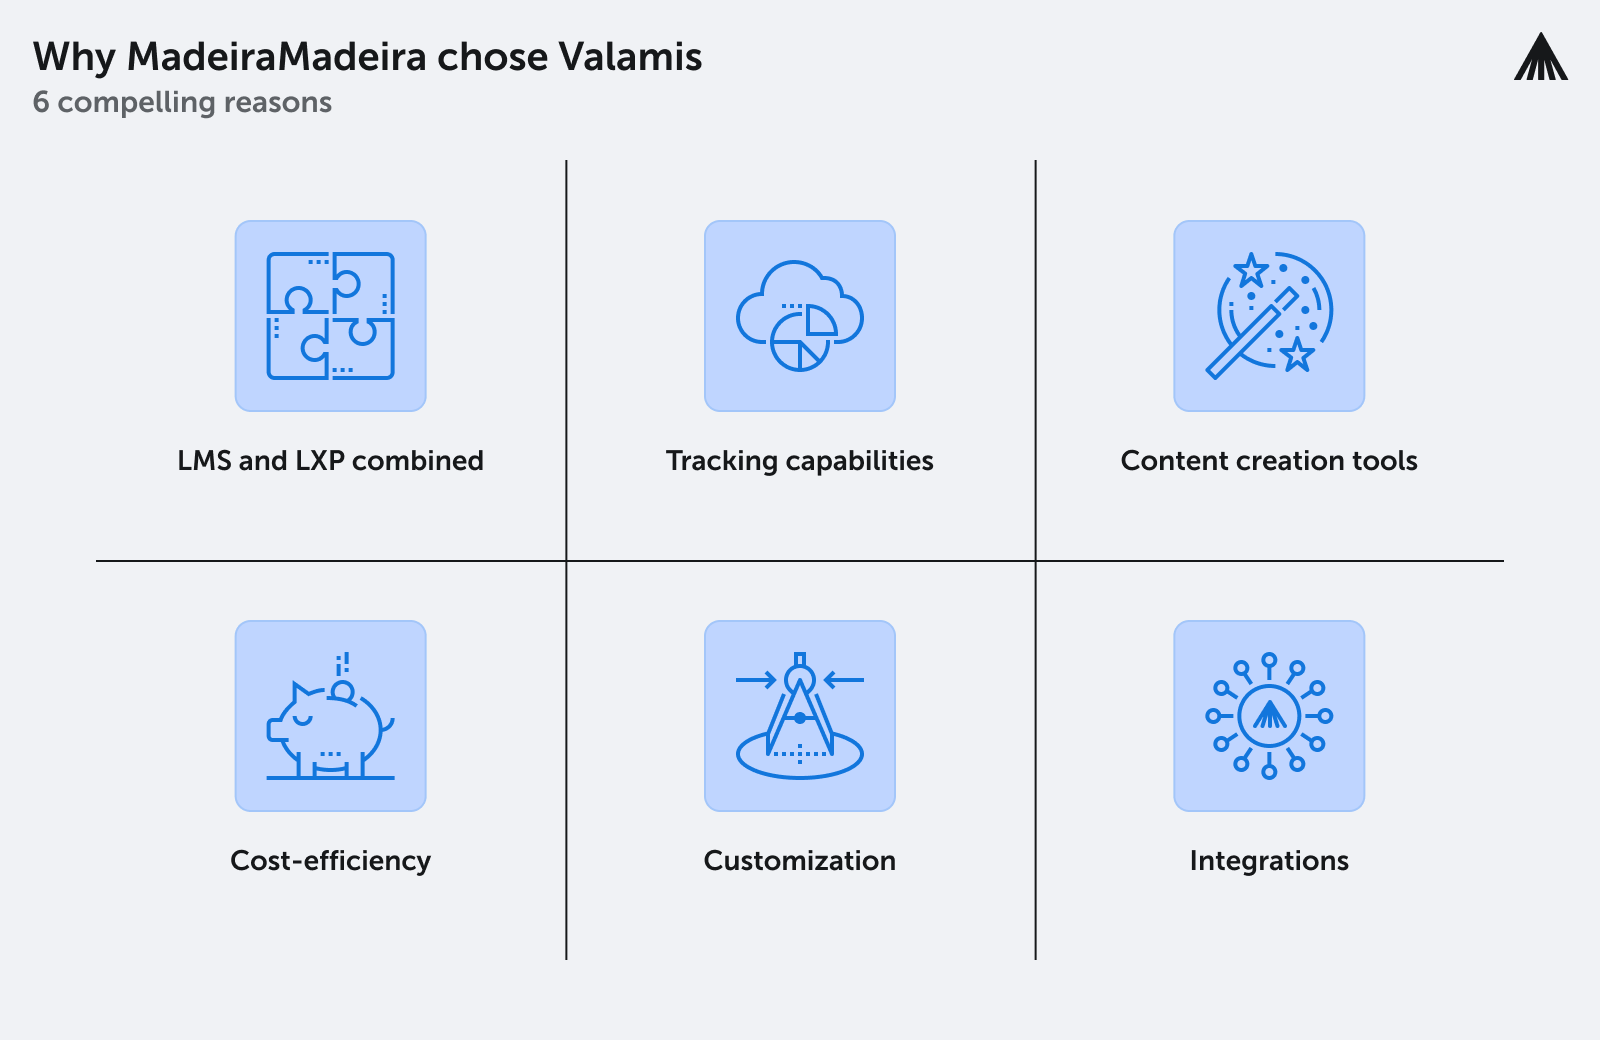 Das Bild zeigt, warum sich MadeiraMadeira für Valamis als Partner für die Weiterbildung und Entwicklung seiner Mitarbeiter entschieden hat